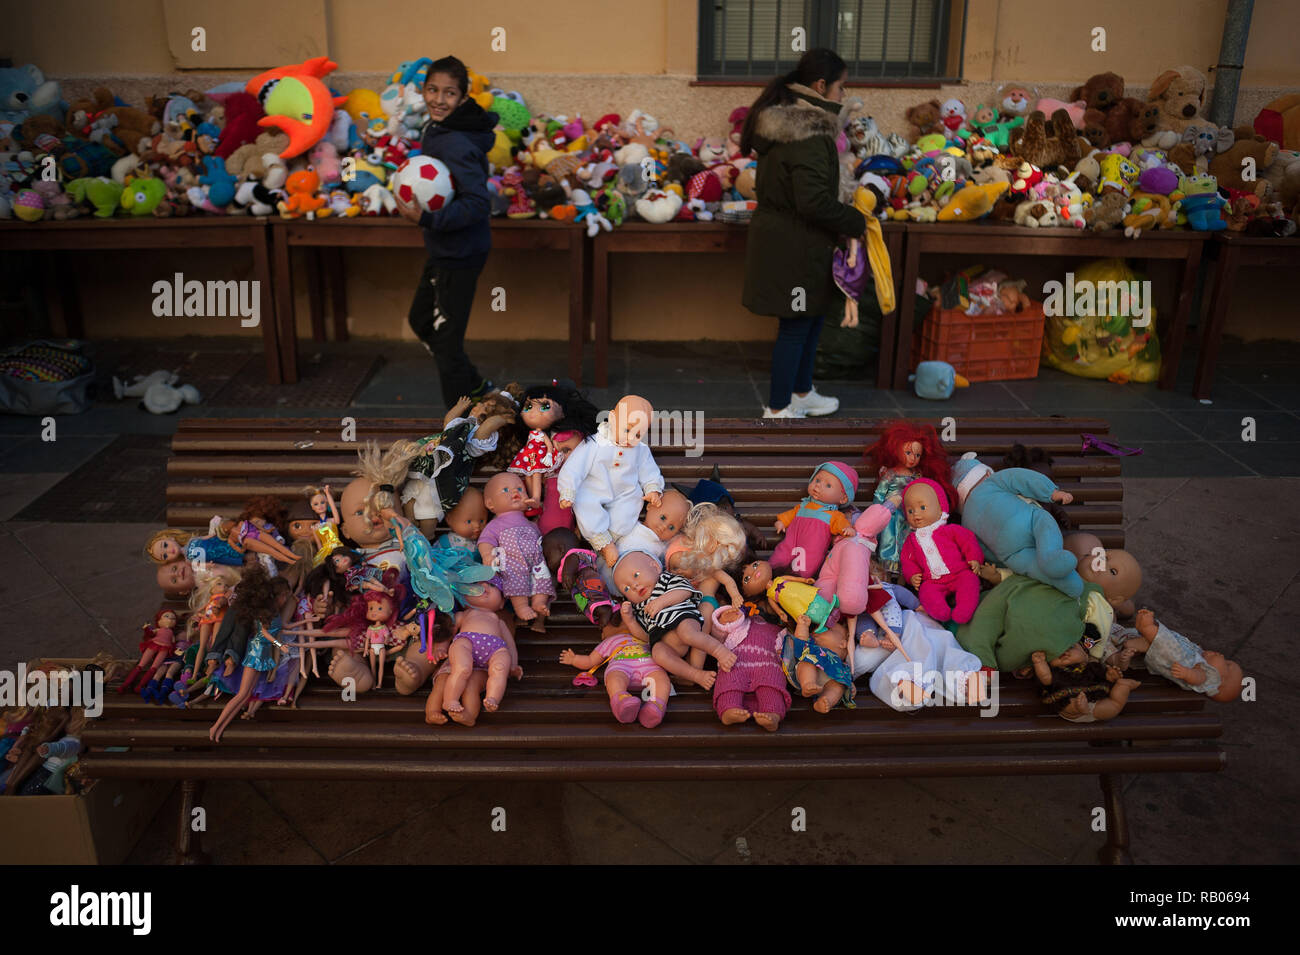 Málaga, España. 5 de enero de 2018. Se considera a los niños traer juguetes  para su distribución durante una epifanía celebración organizada por la ONG  de caridad, Ángeles malagueños de la noche (